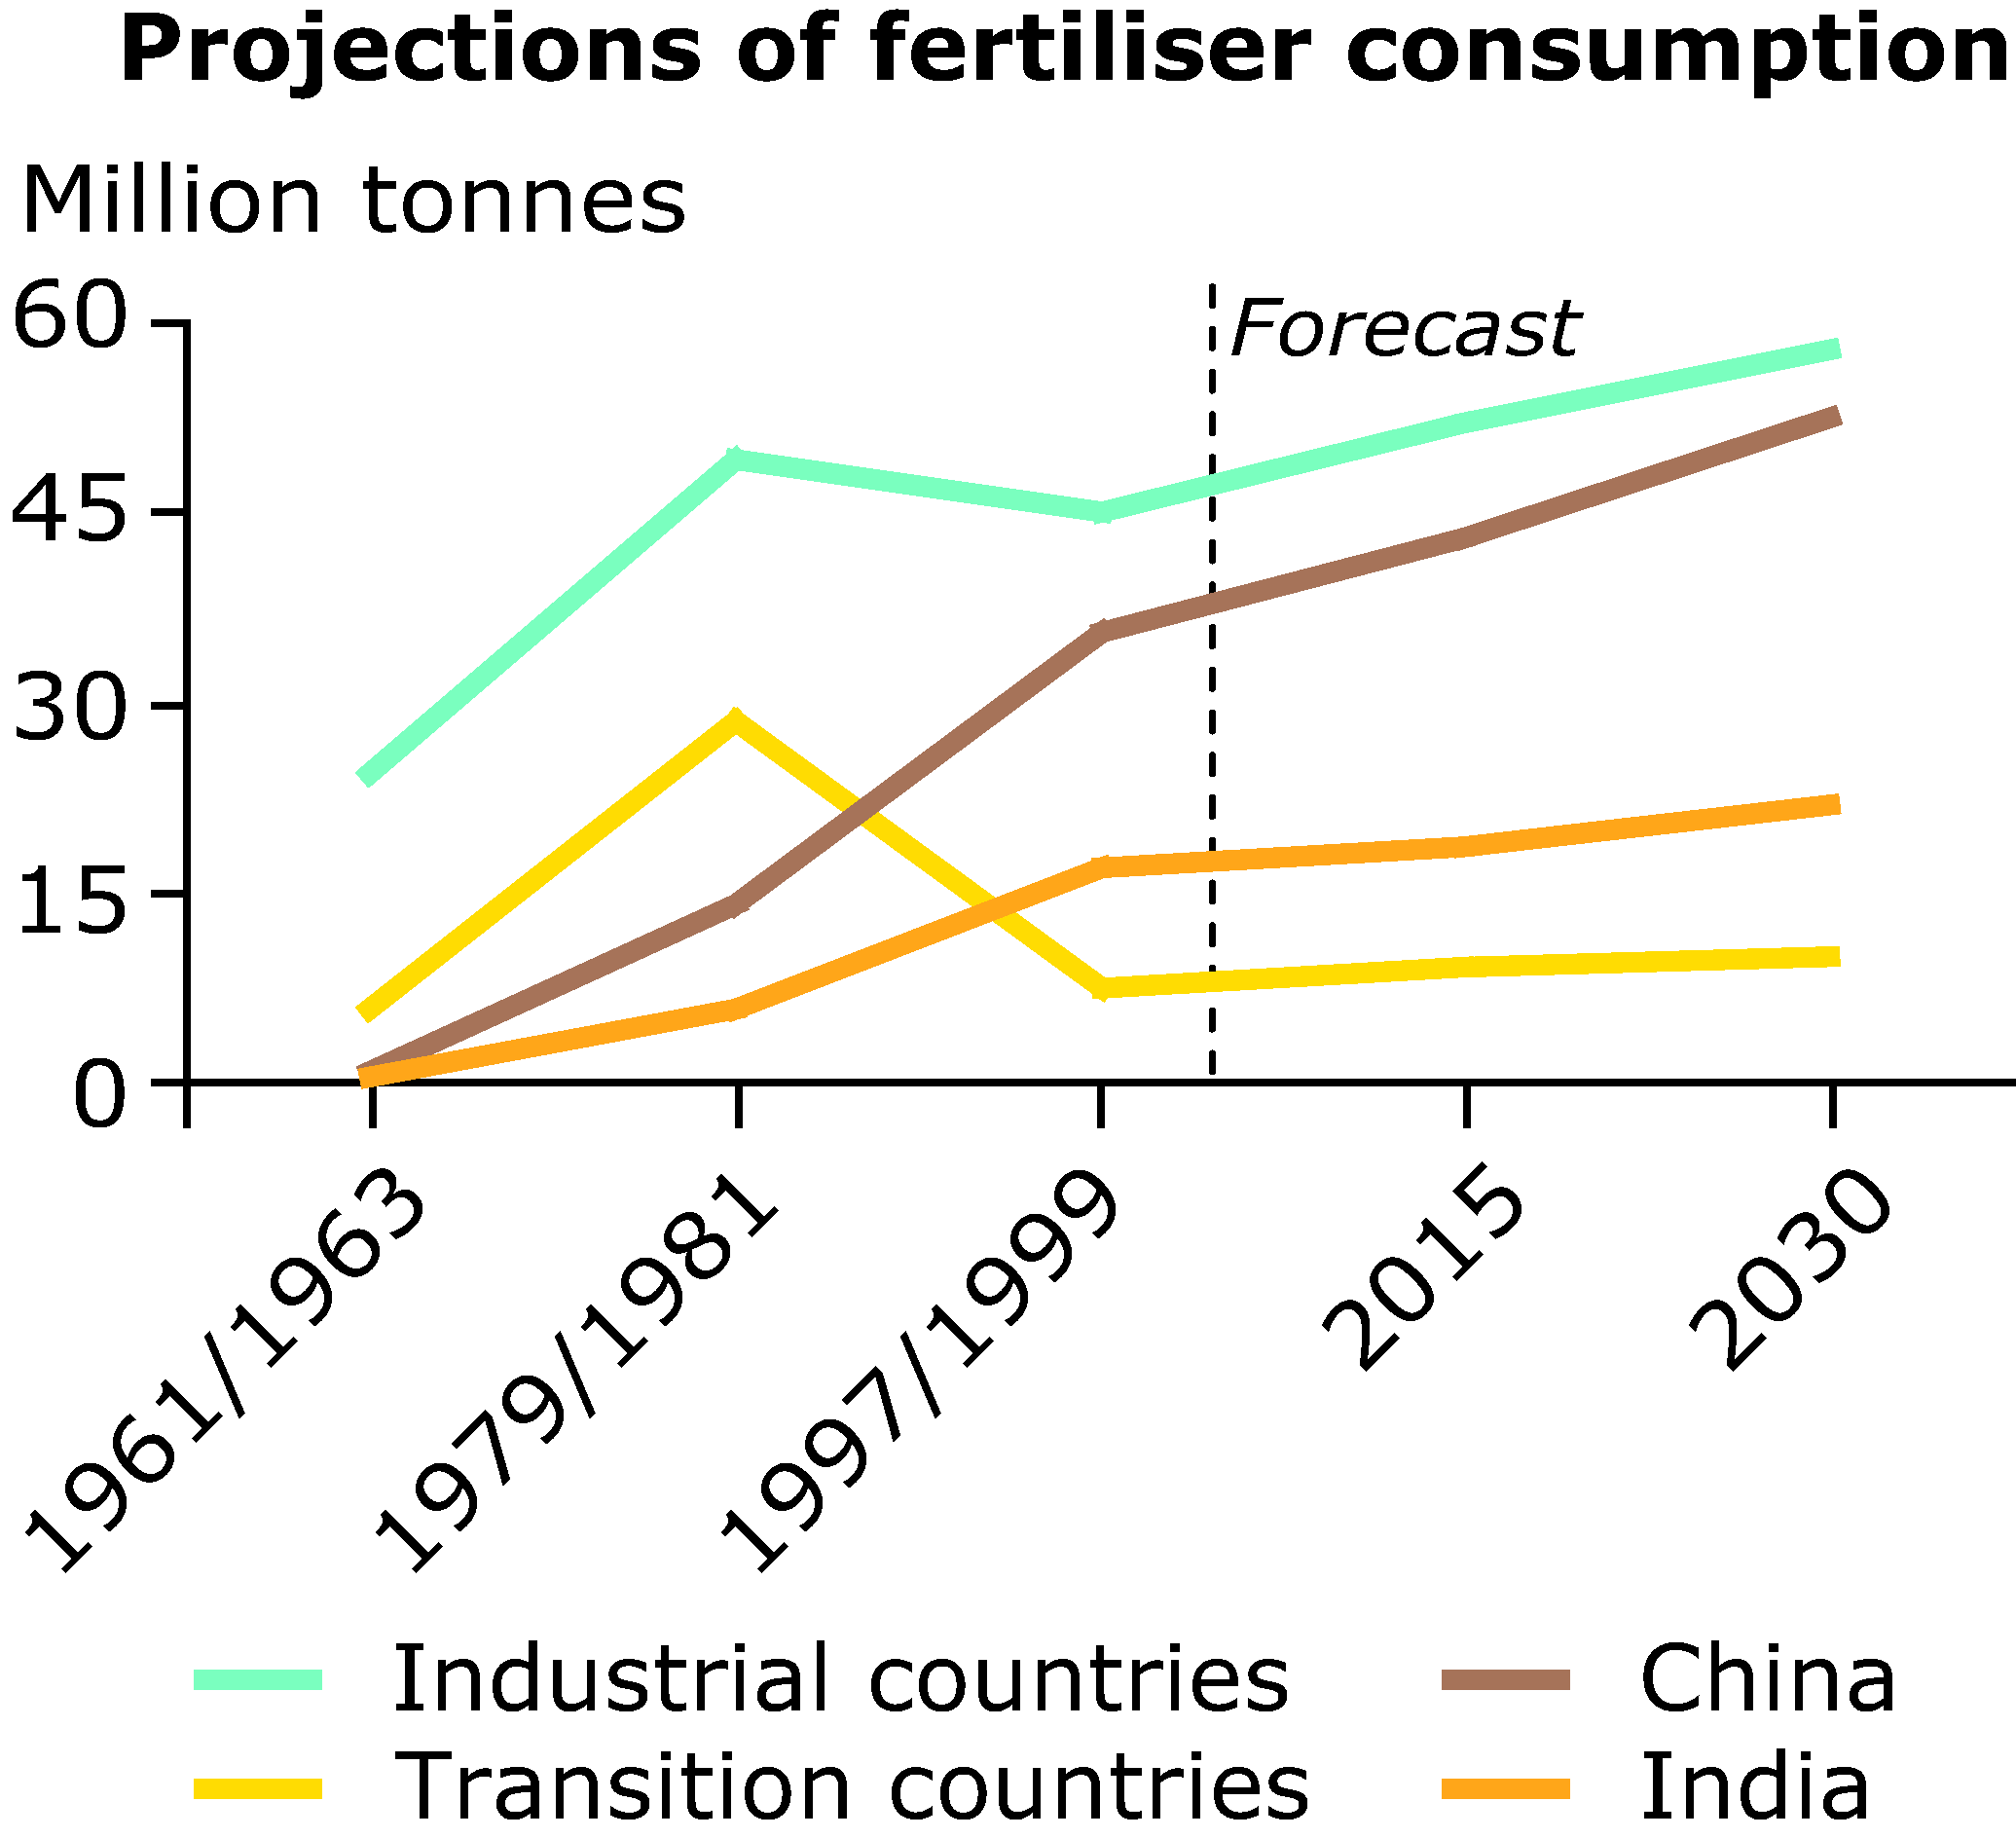 Projections of fertiliser consumption